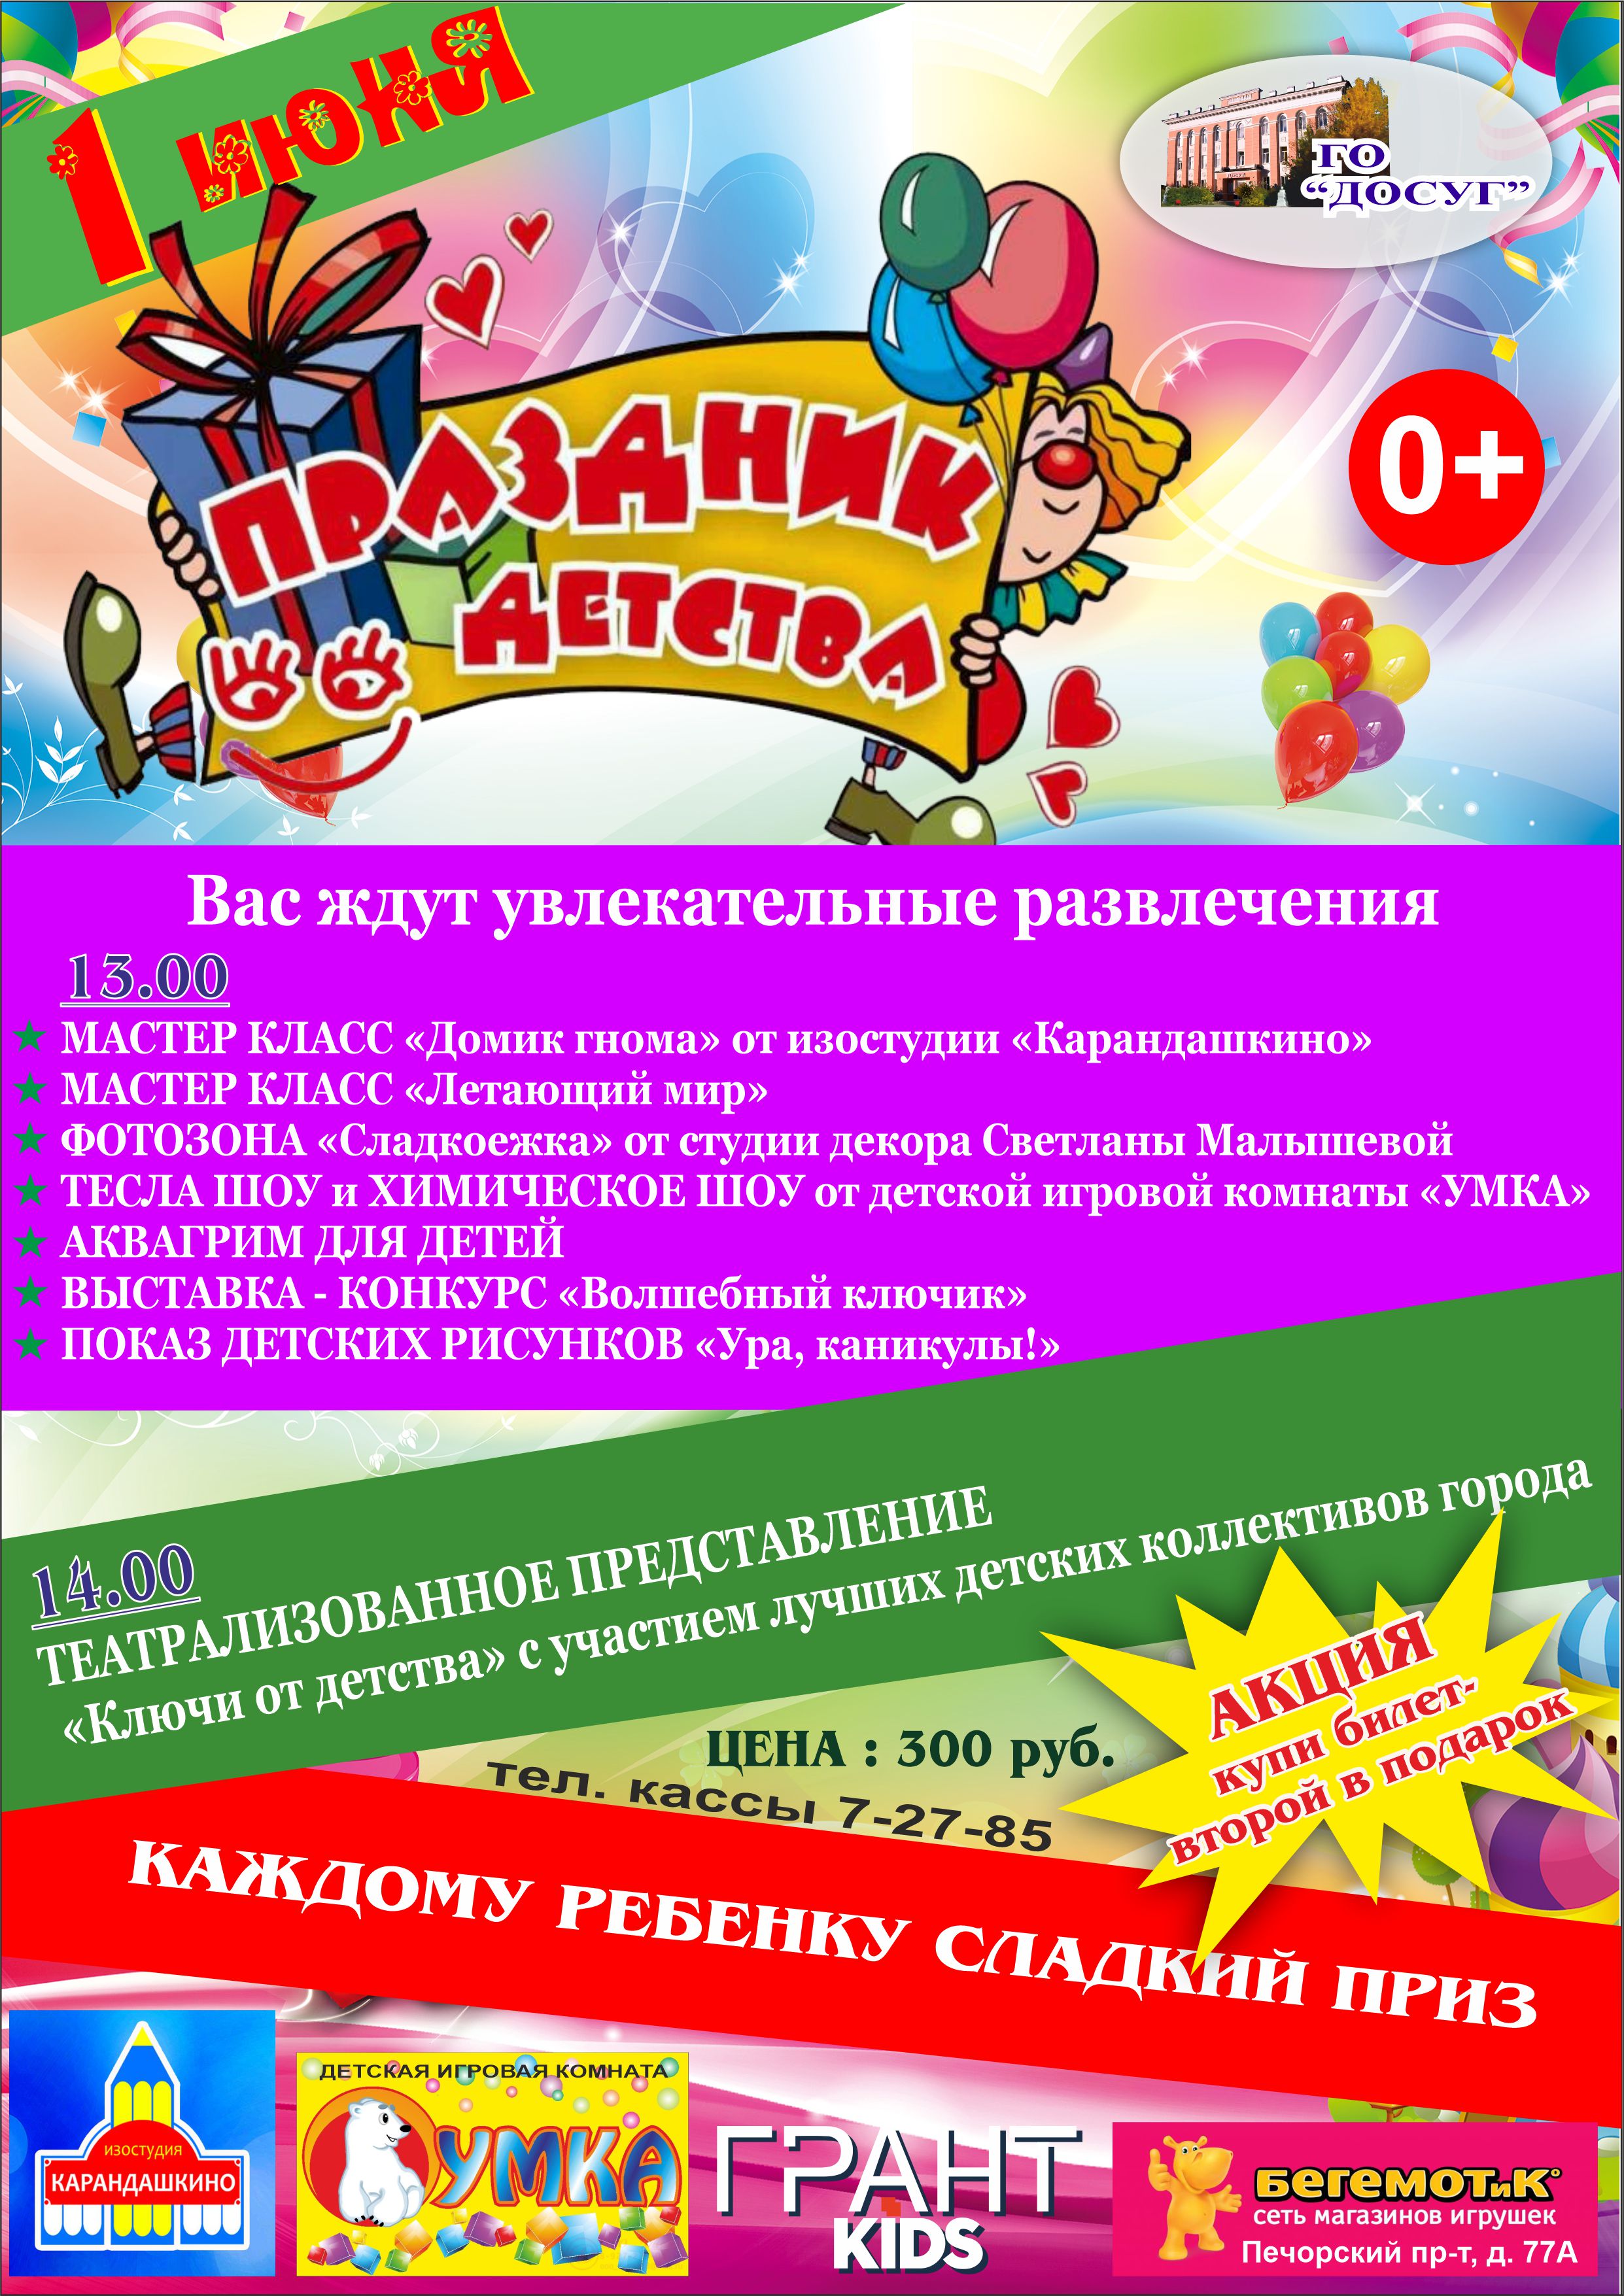 —- 01 июня в 13.00 Театрализованное представление “Праздник детства” цена билета: 300 руб. возрастной ценз 0+ Акция: 2-й билет в подарок!